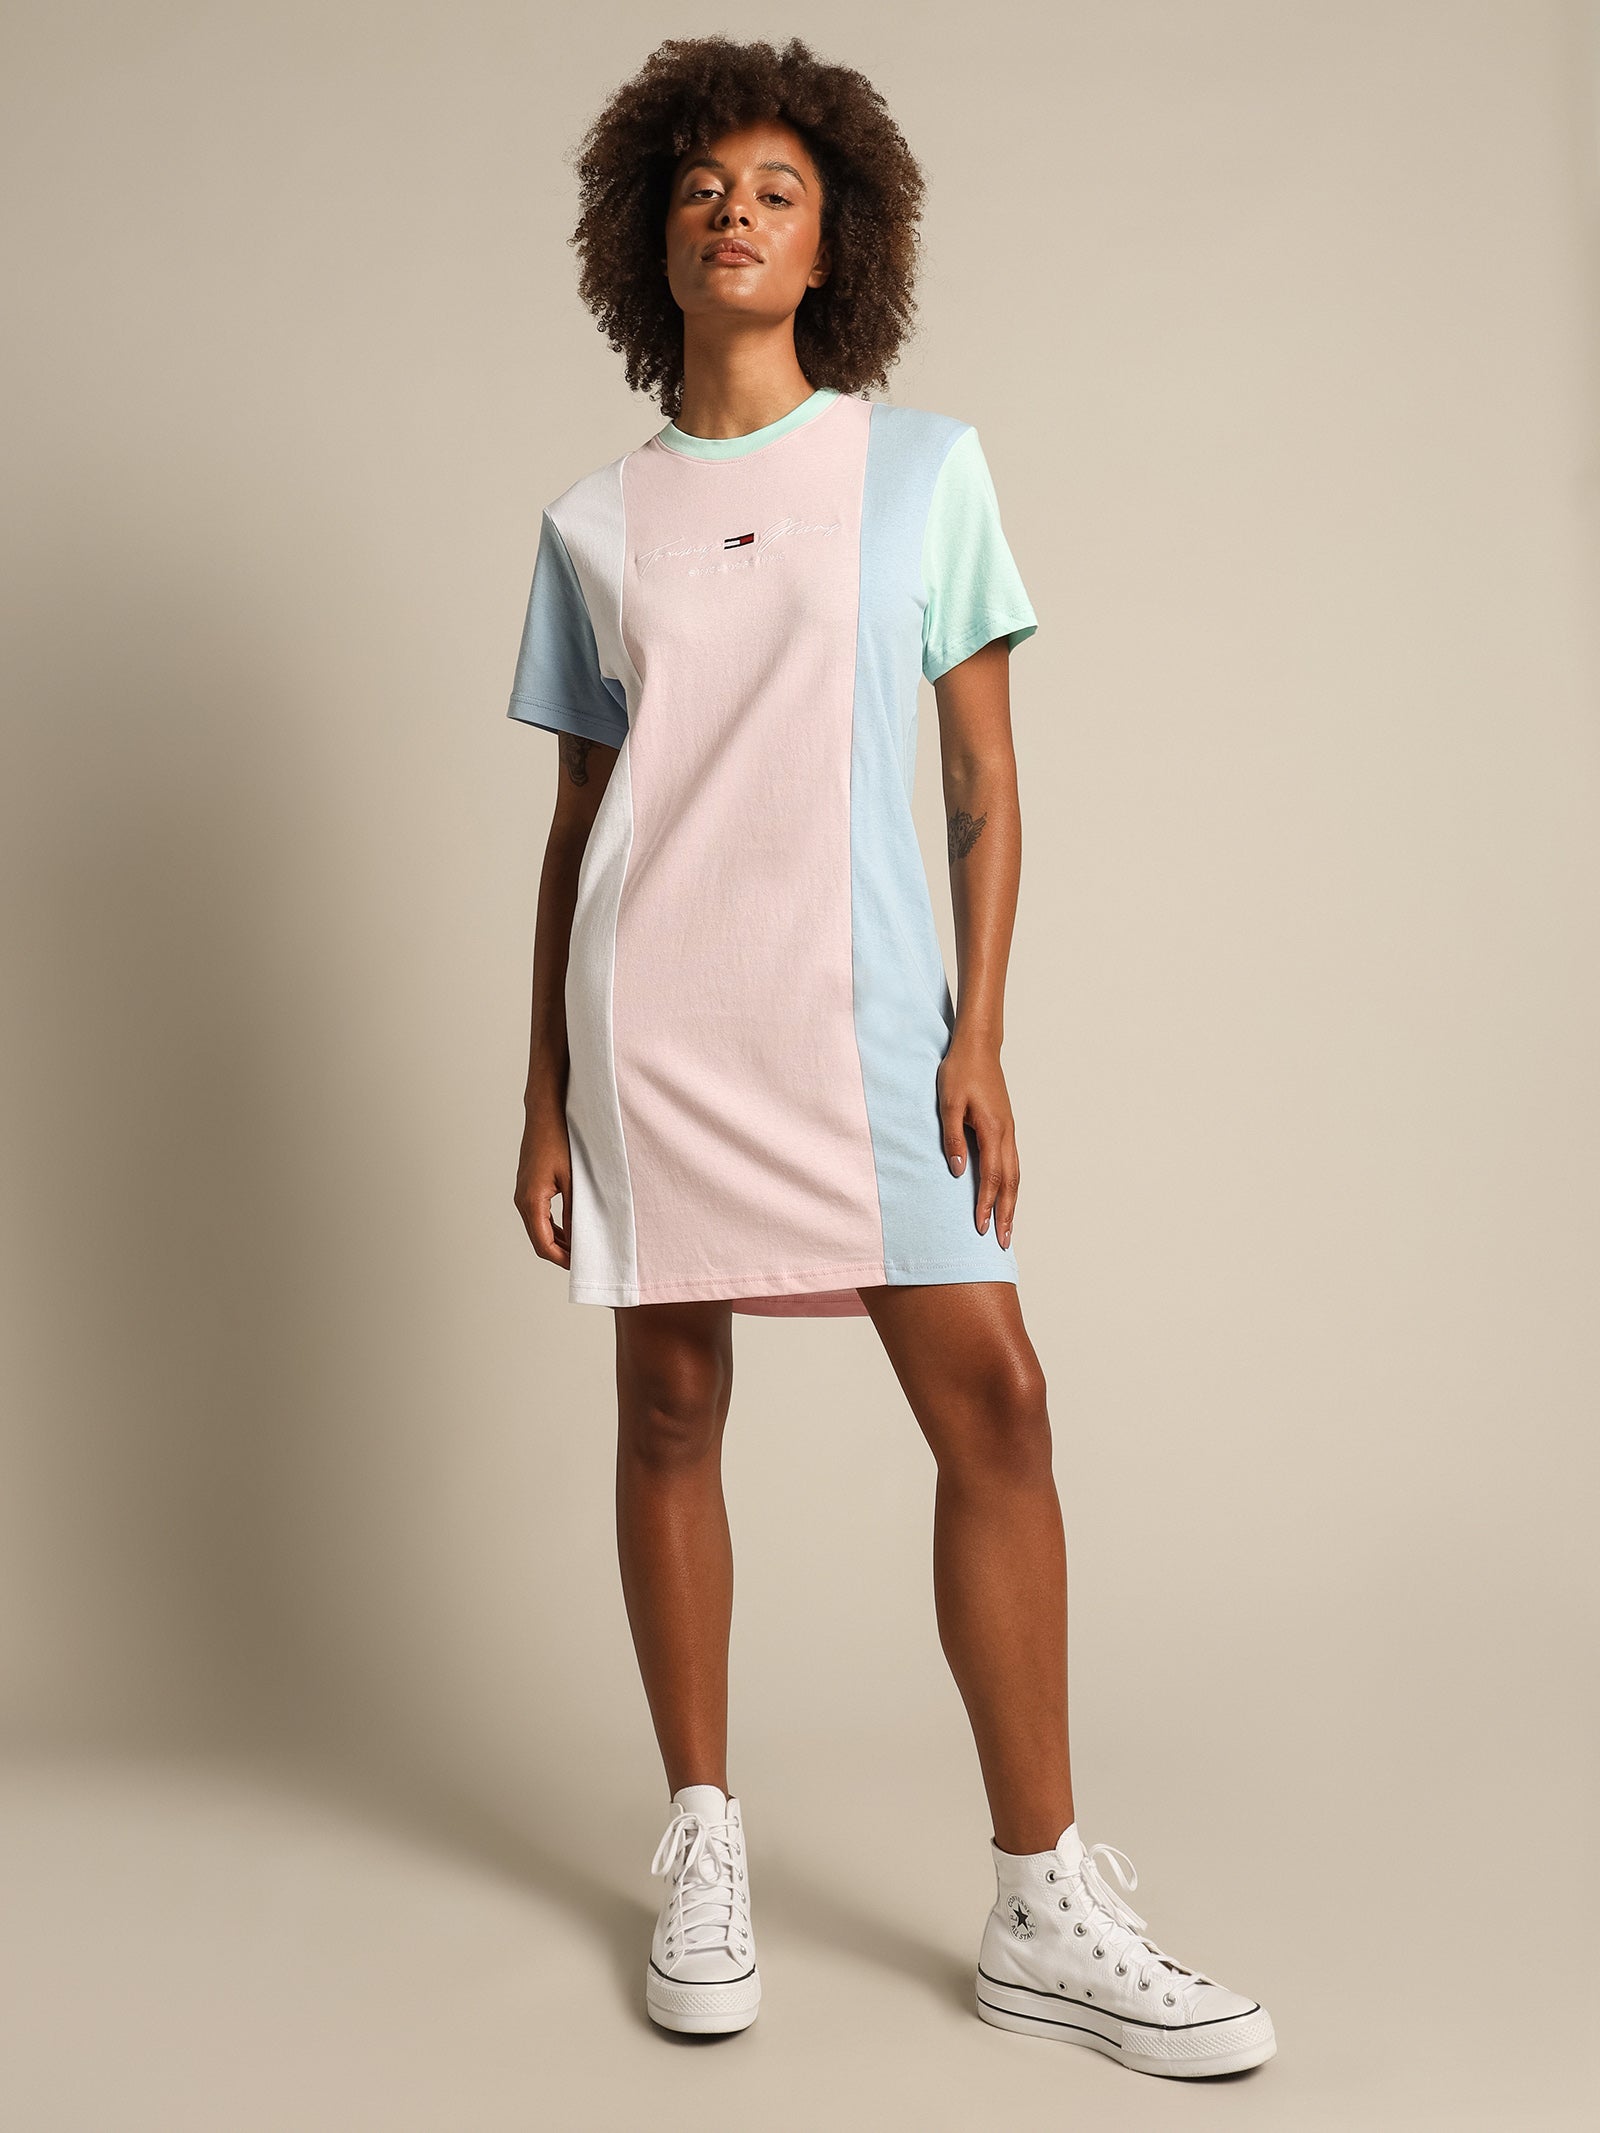 Color Block T-Shirt Dress in Romantic Pink & Multi